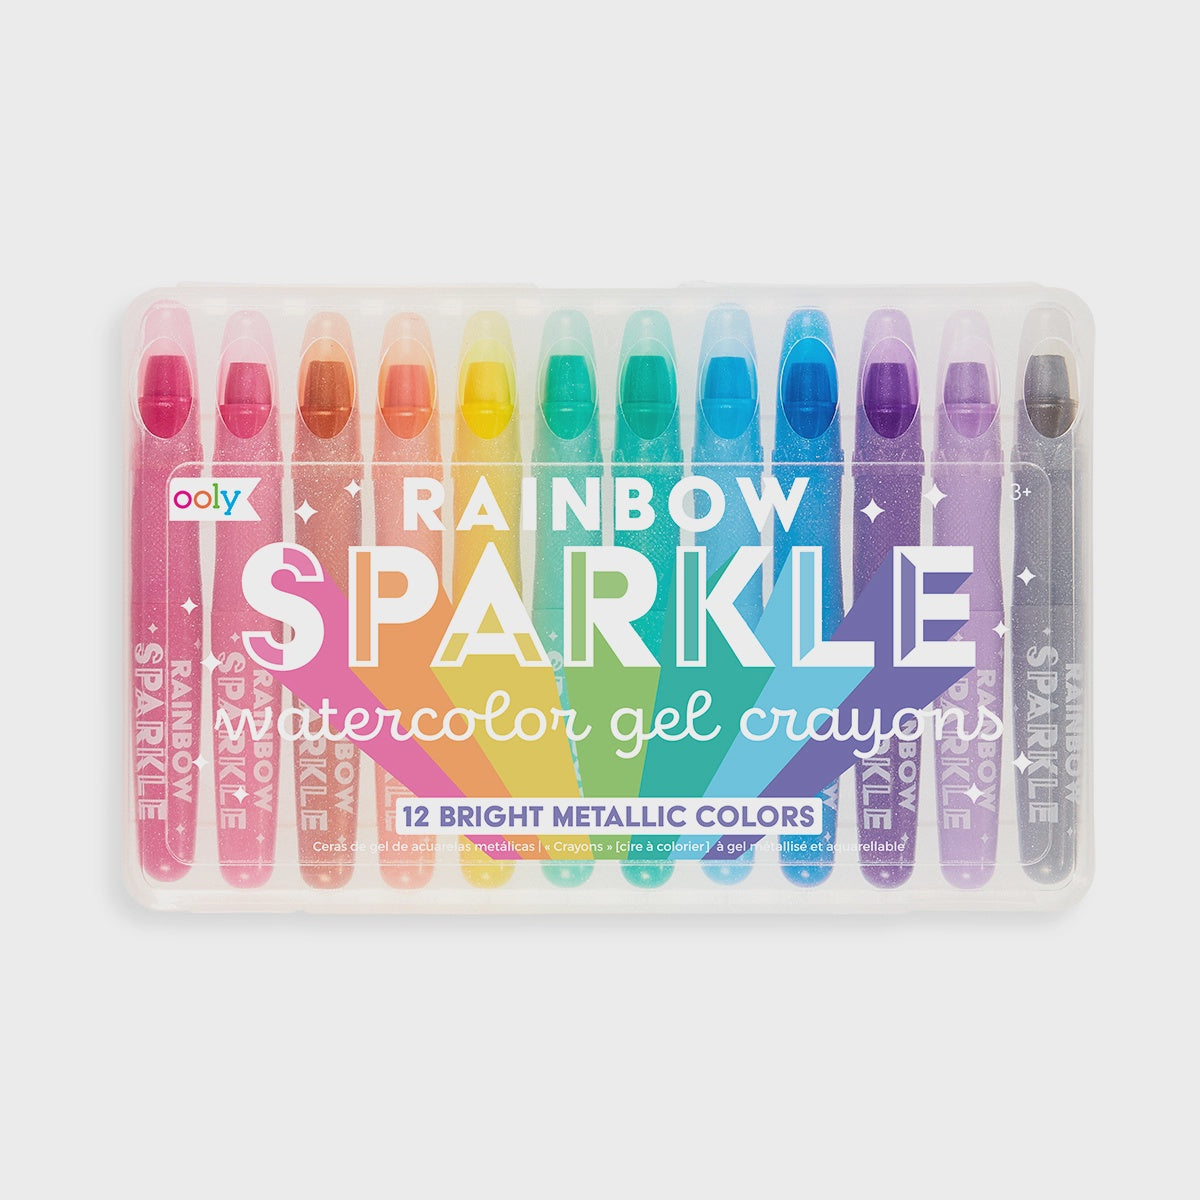 Rainbow Sparkle Watercolor Gel Crayon's